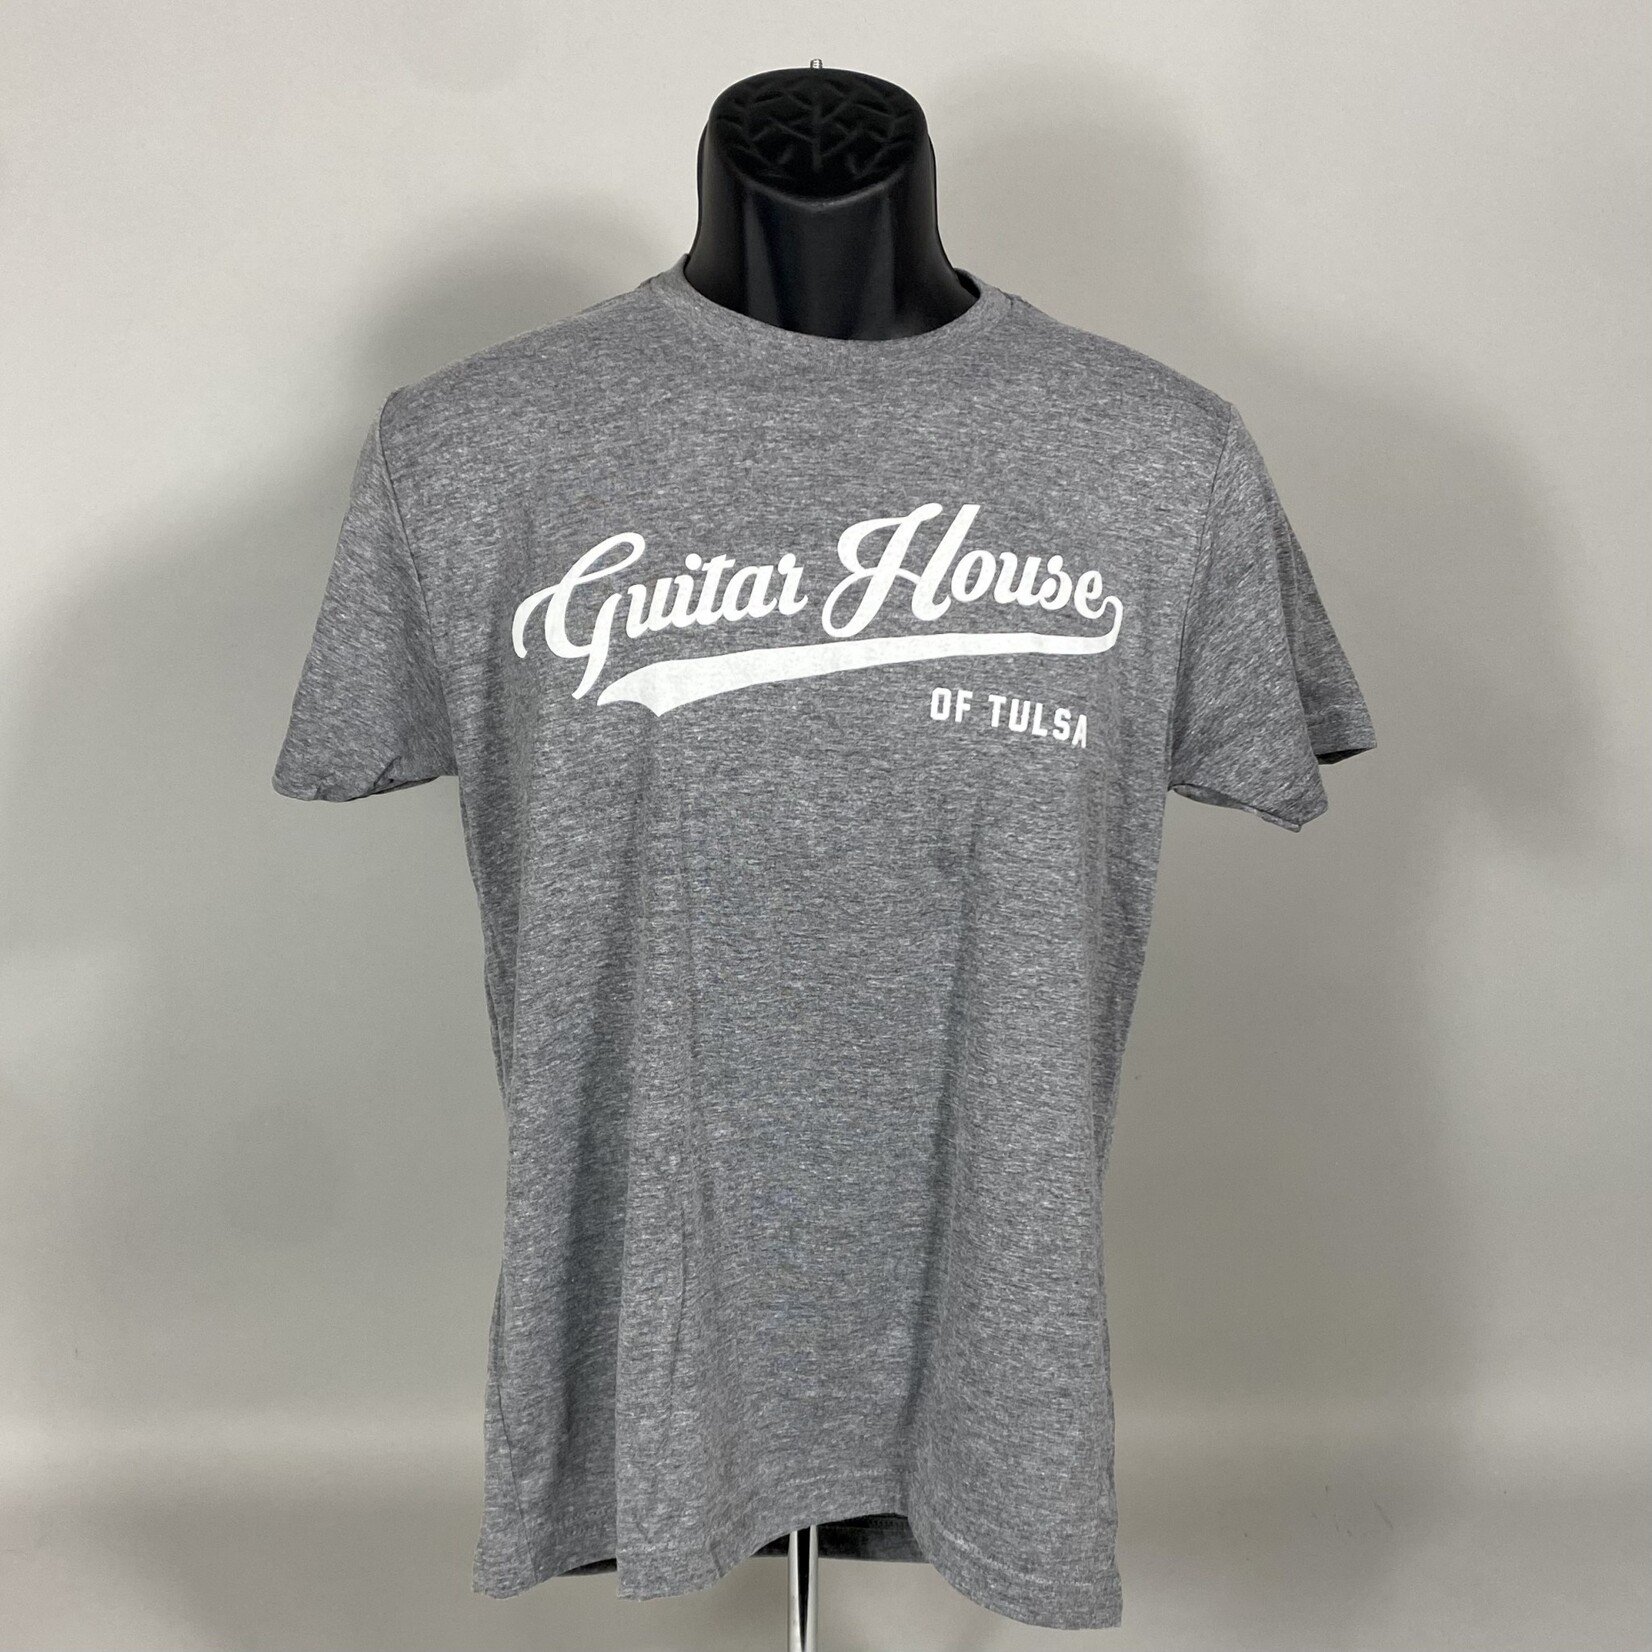 GHoT Merch Guitar House of Tulsa T-Shirt